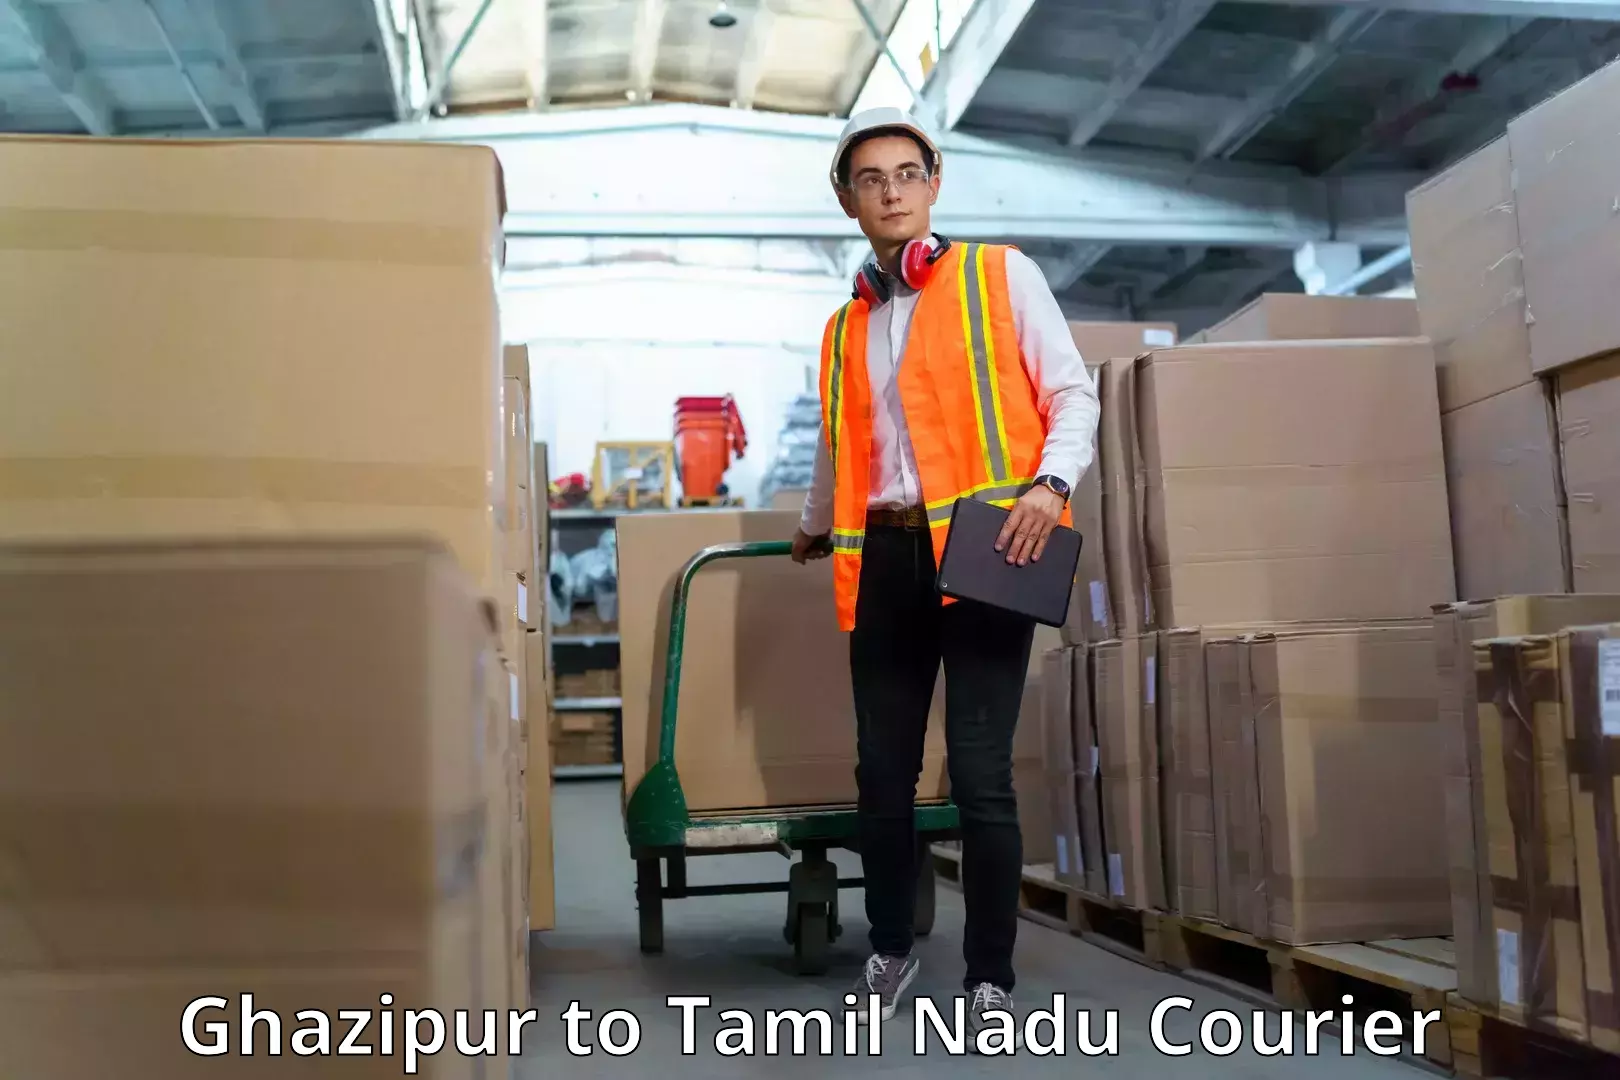 Express logistics service Ghazipur to Tamil Nadu